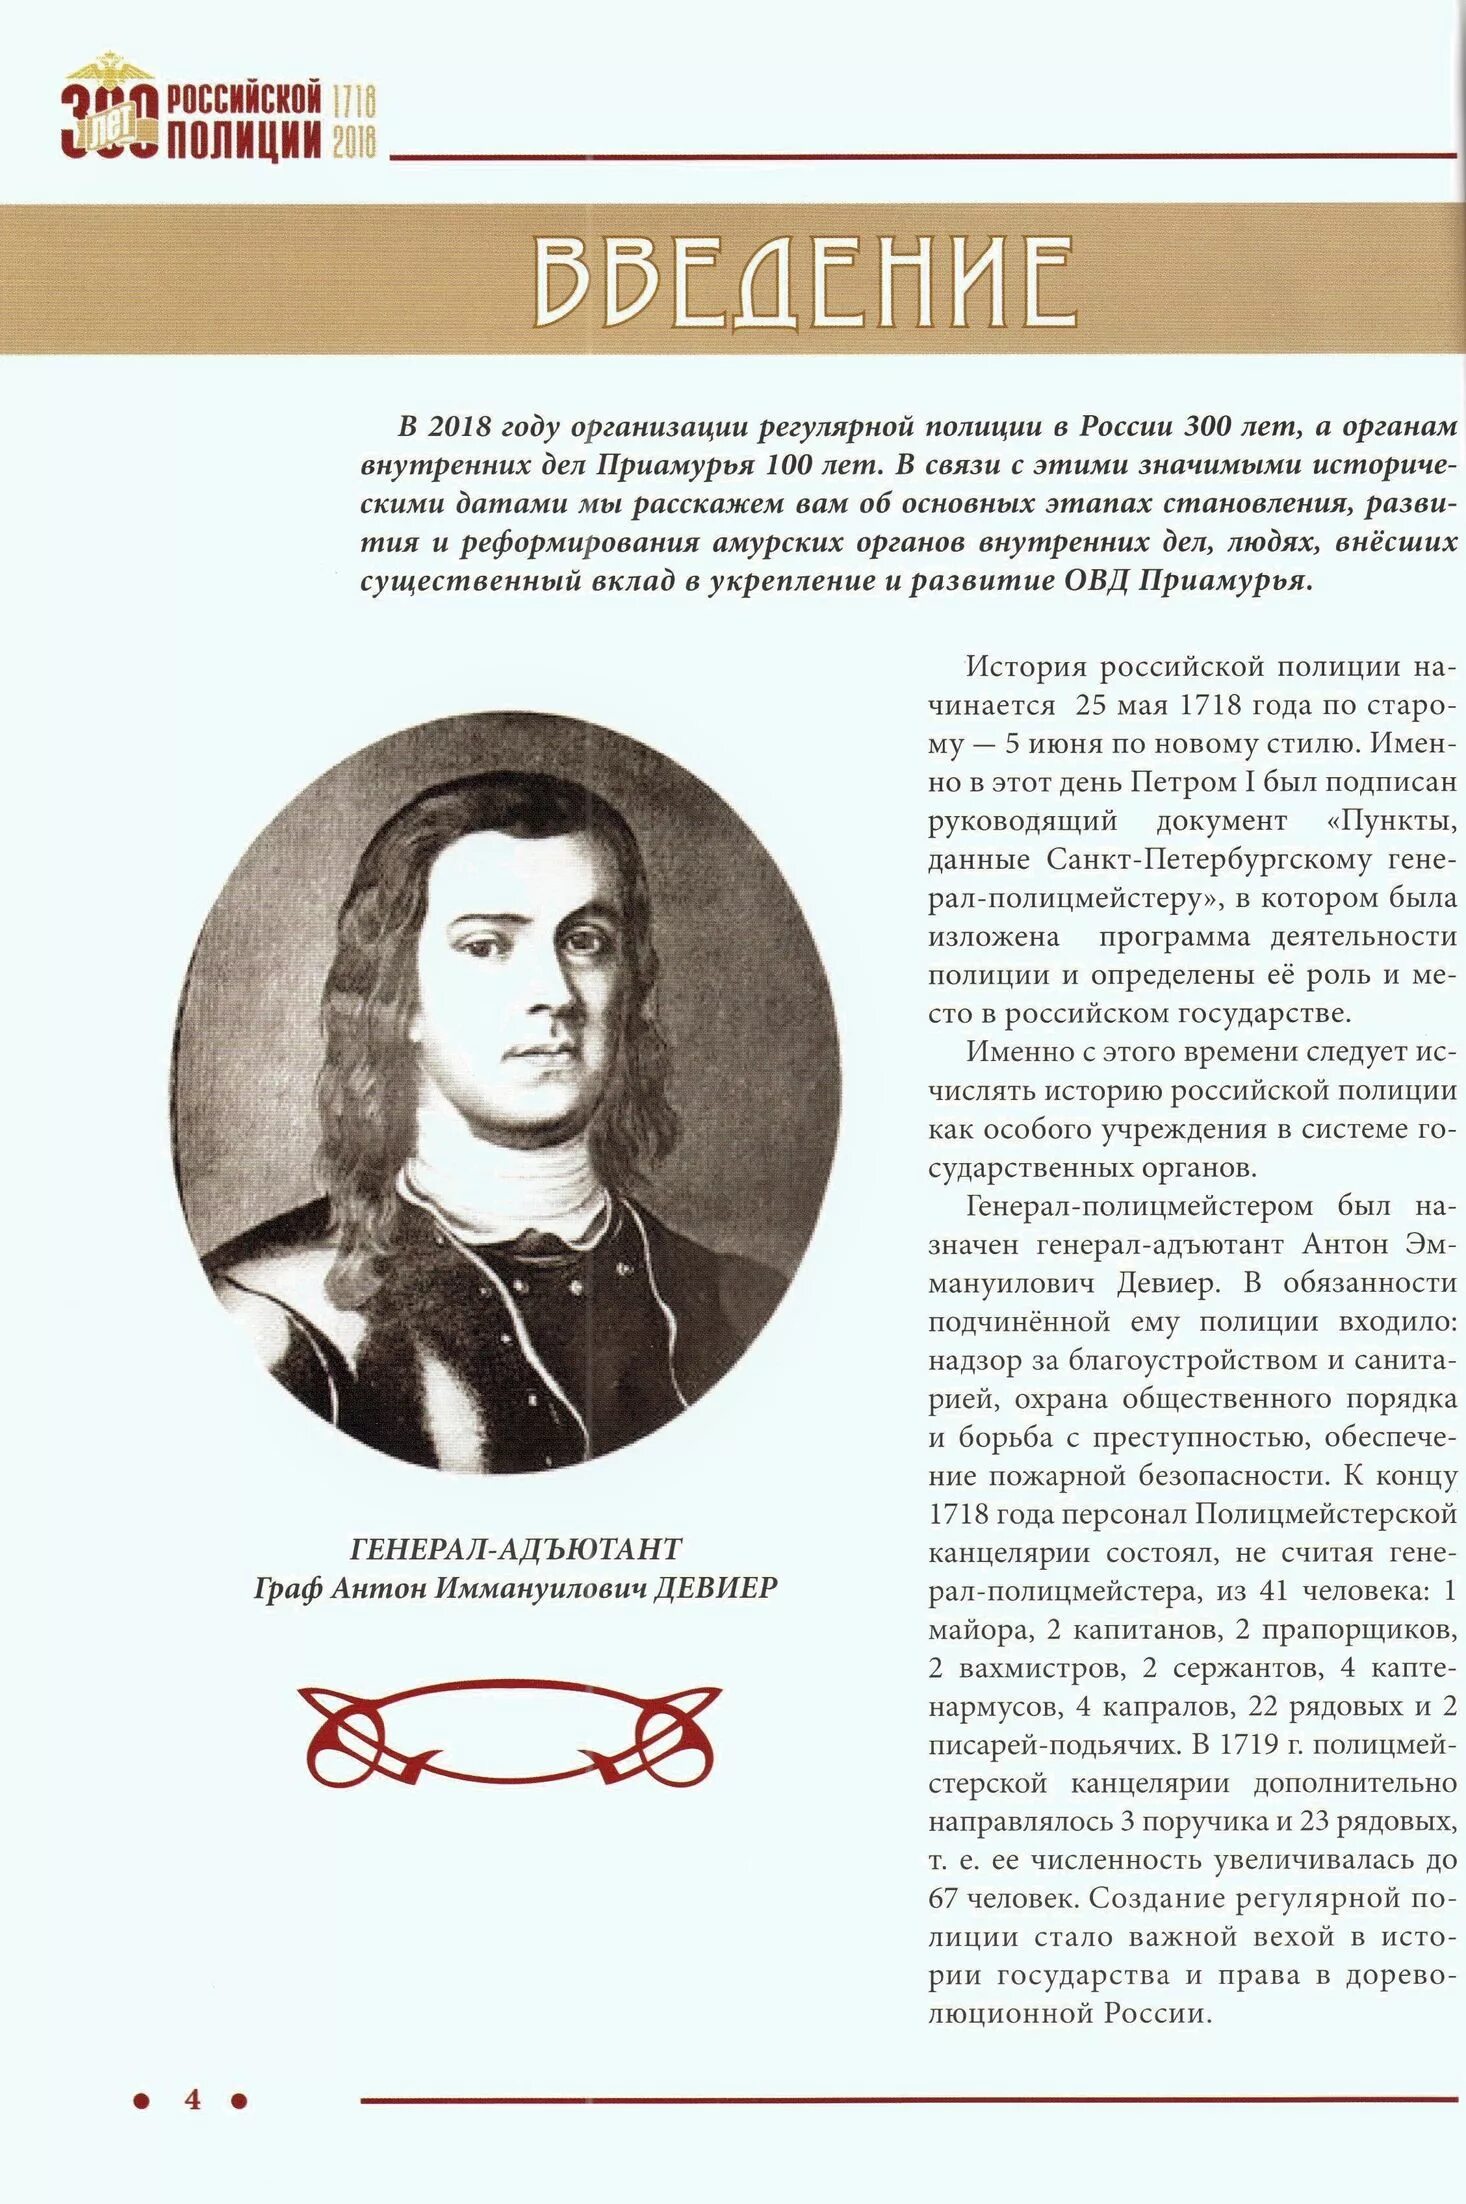 Первый полицмейстер. Девиер первый руководитель Российской полиции. 5 Июня 1718 года день образования Российской полиции.